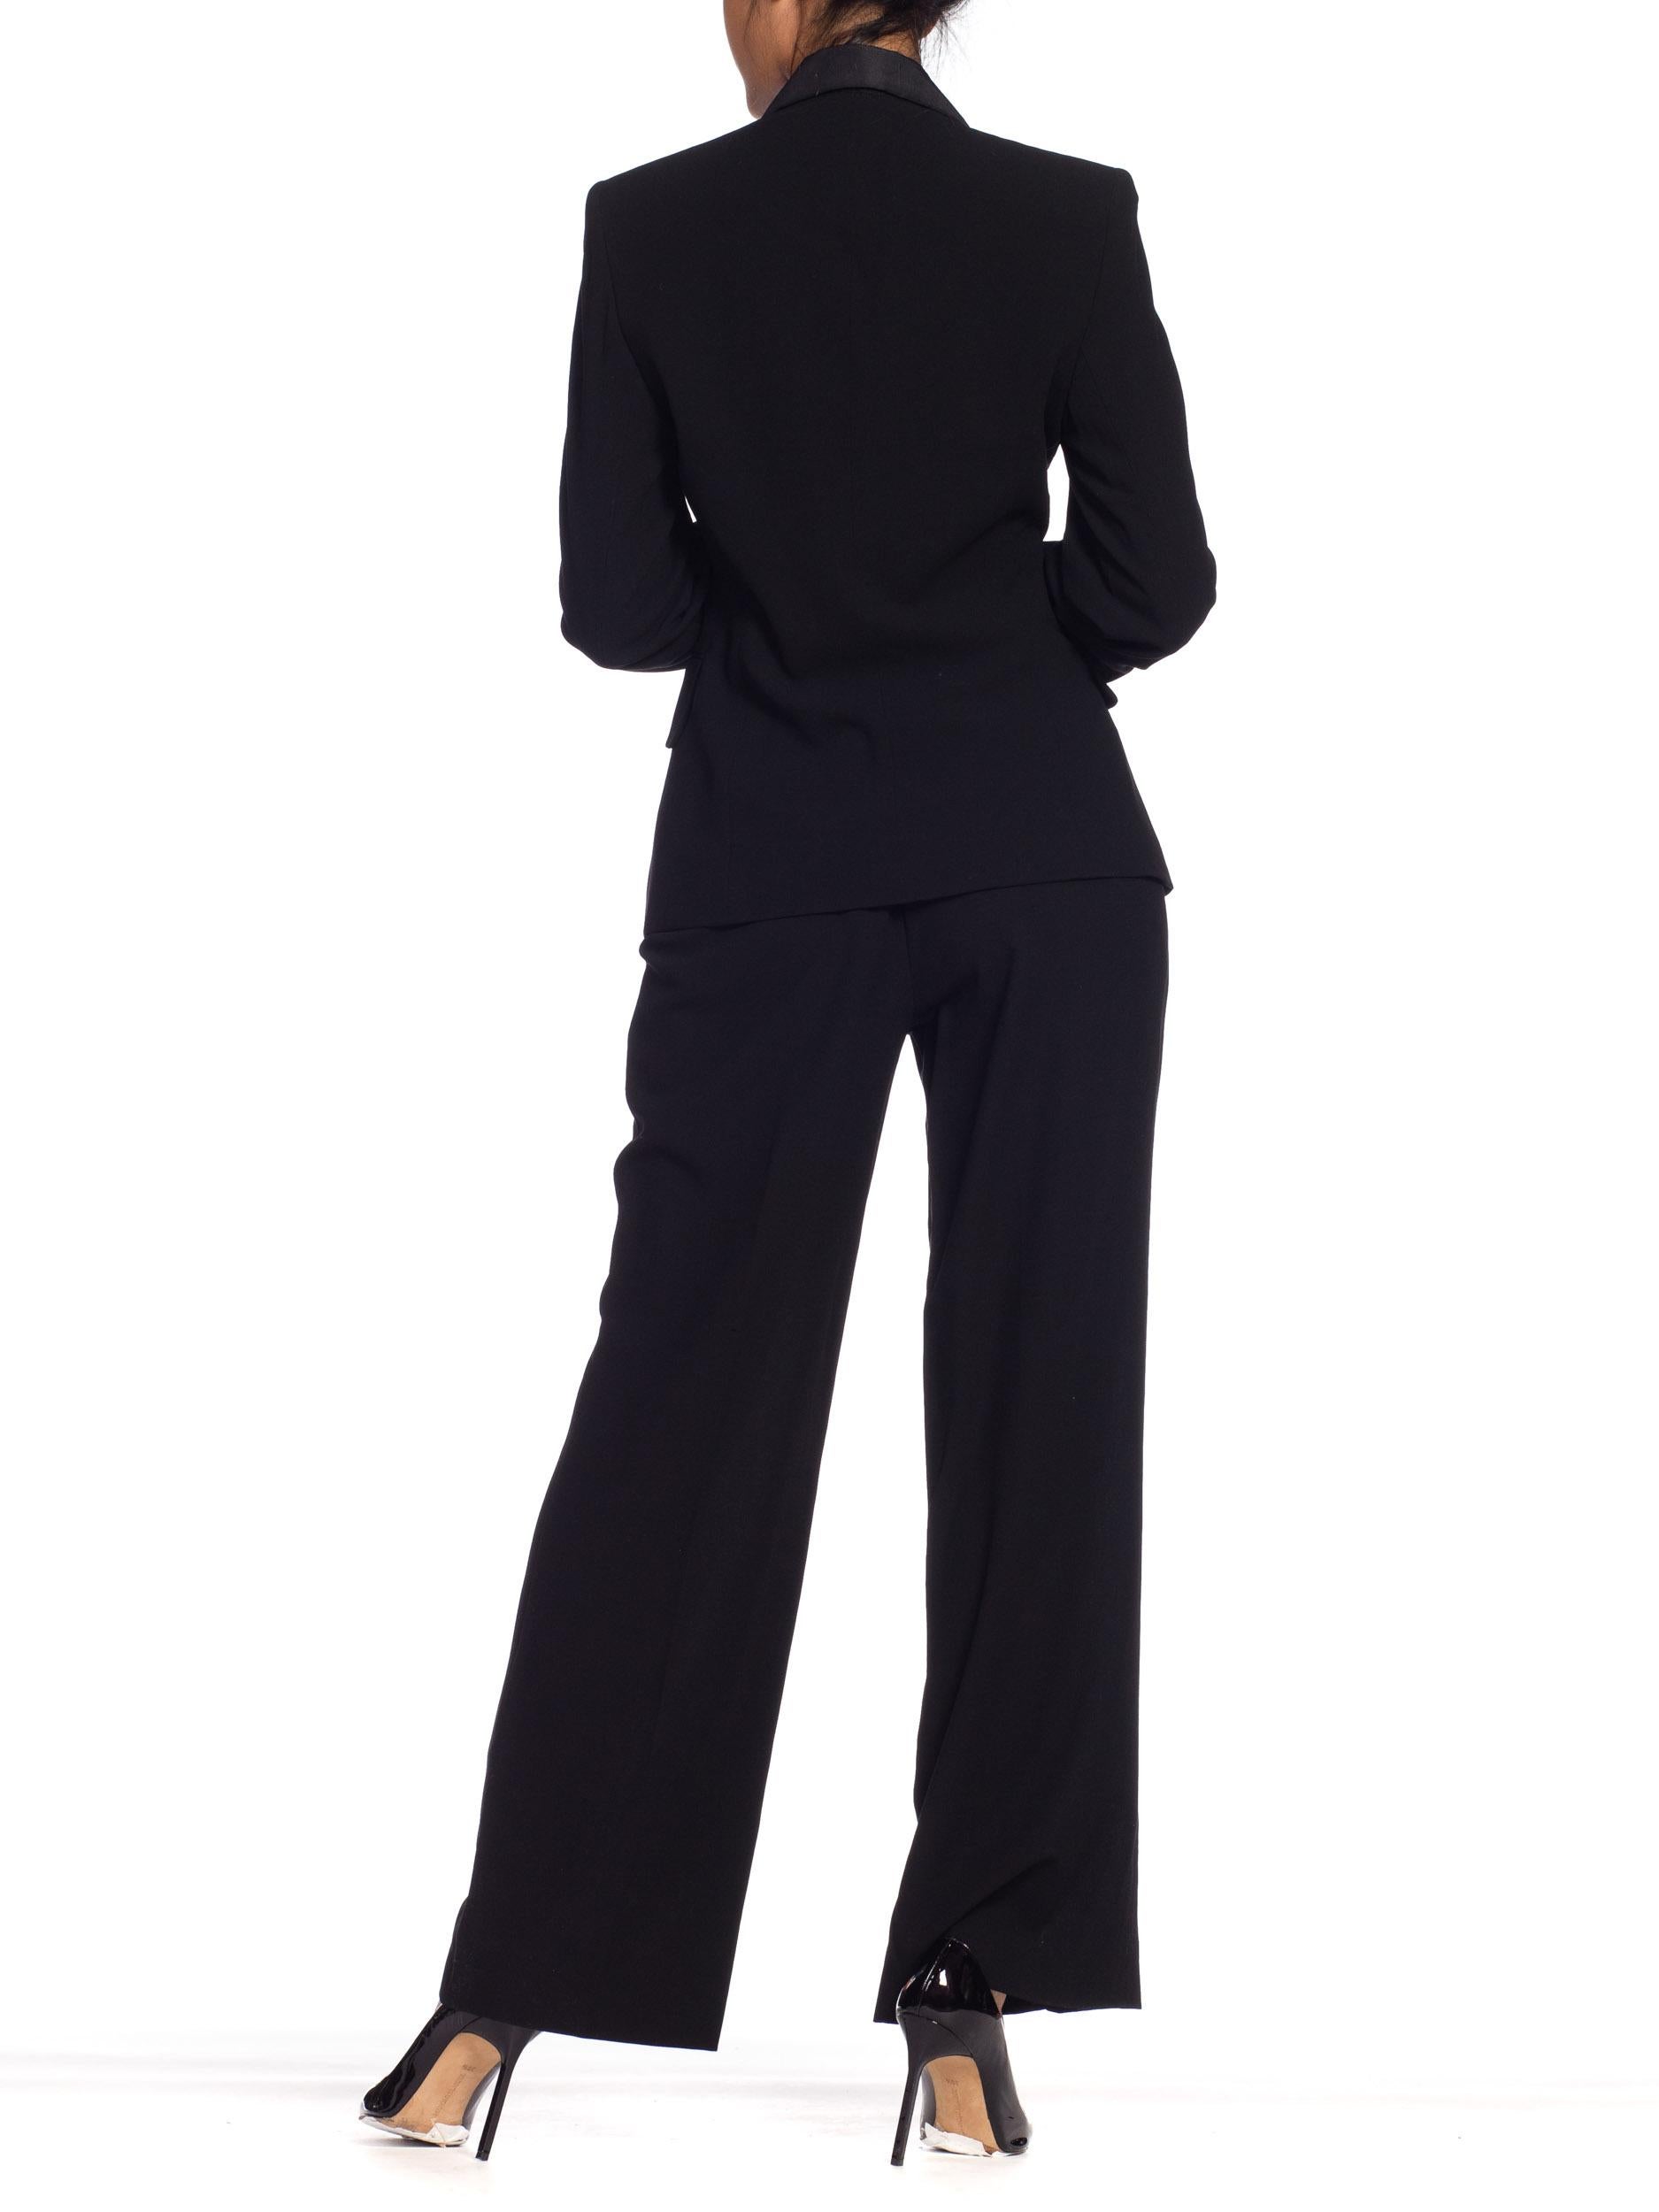 1990s Donna Karan YSL Style Tuxedo NWT 2